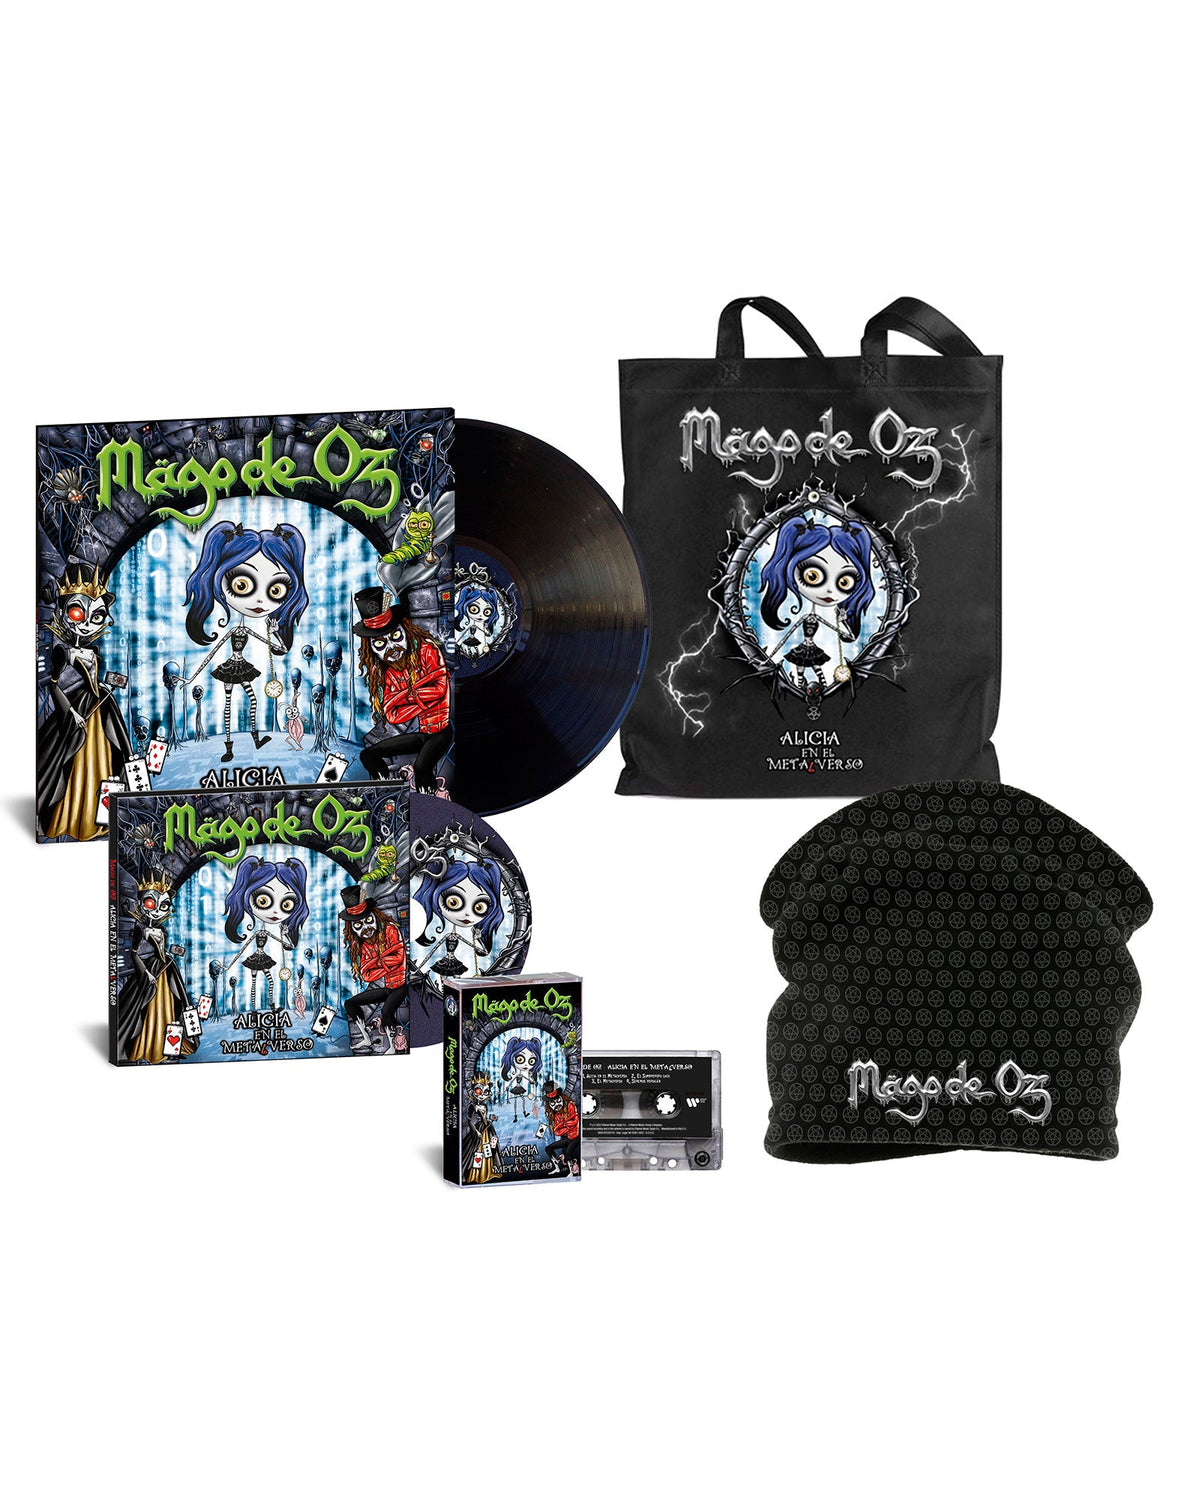 Mägo de Oz - Box Deluxe "Alicia en el Metalverso" (LP + CD + Casette + Totebag + Braga Cabeza-Cuello) - D2fy · Rocktud - Rocktud